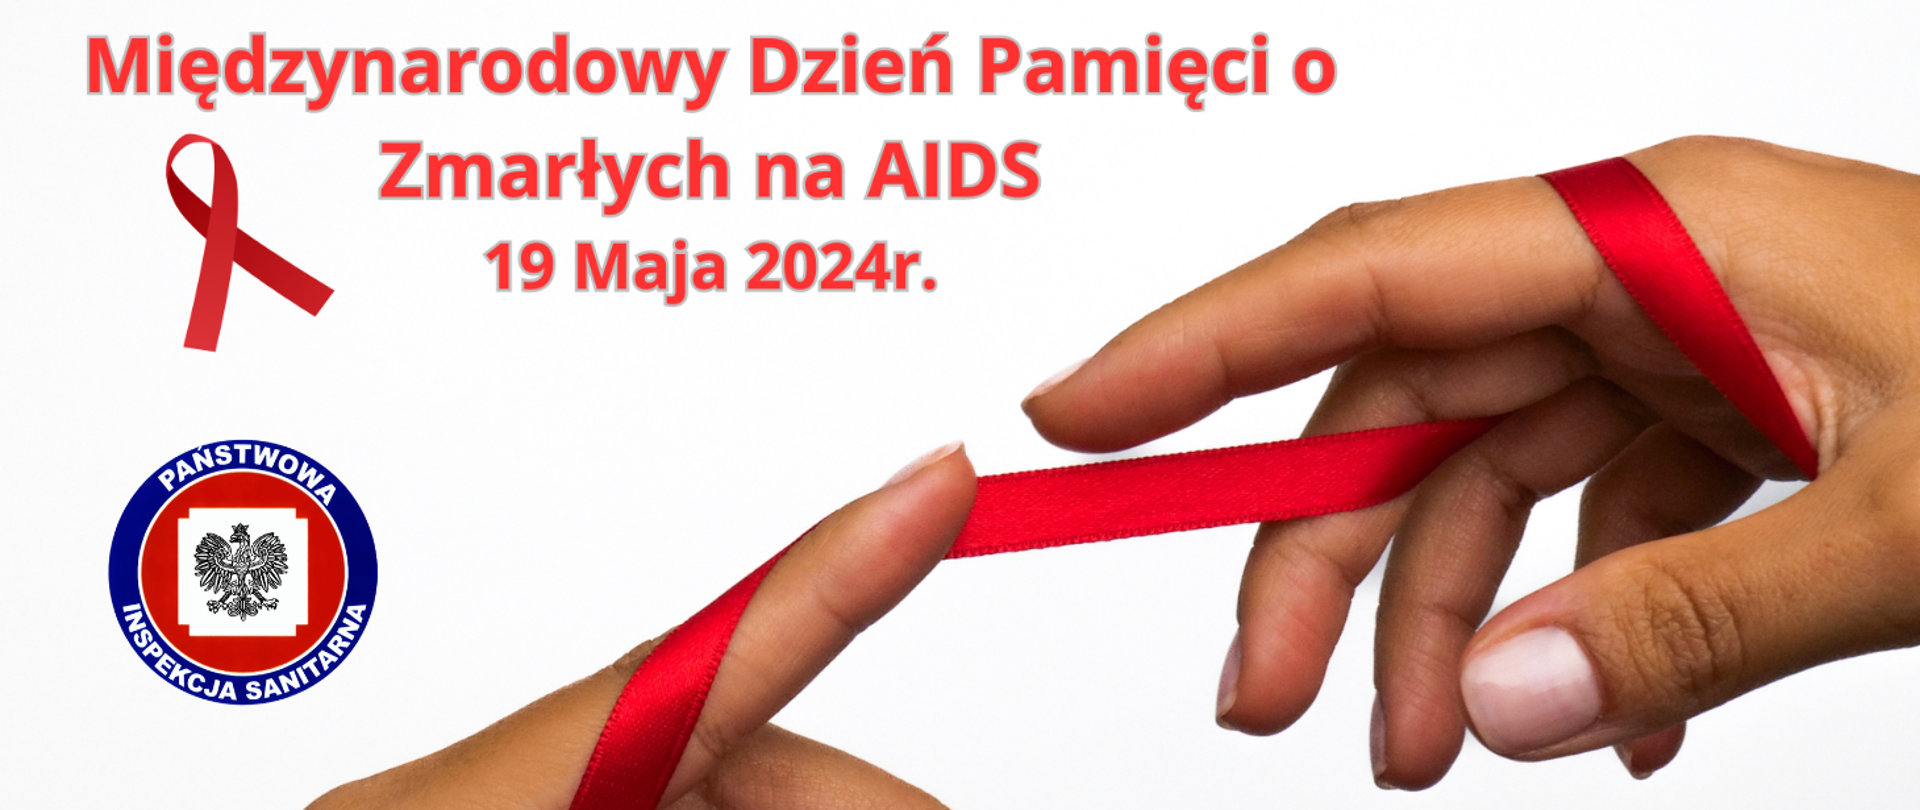 Międzynarodowy Dzień Pamięci o Zmarłych na AIDS. 19 maja 2024 r.